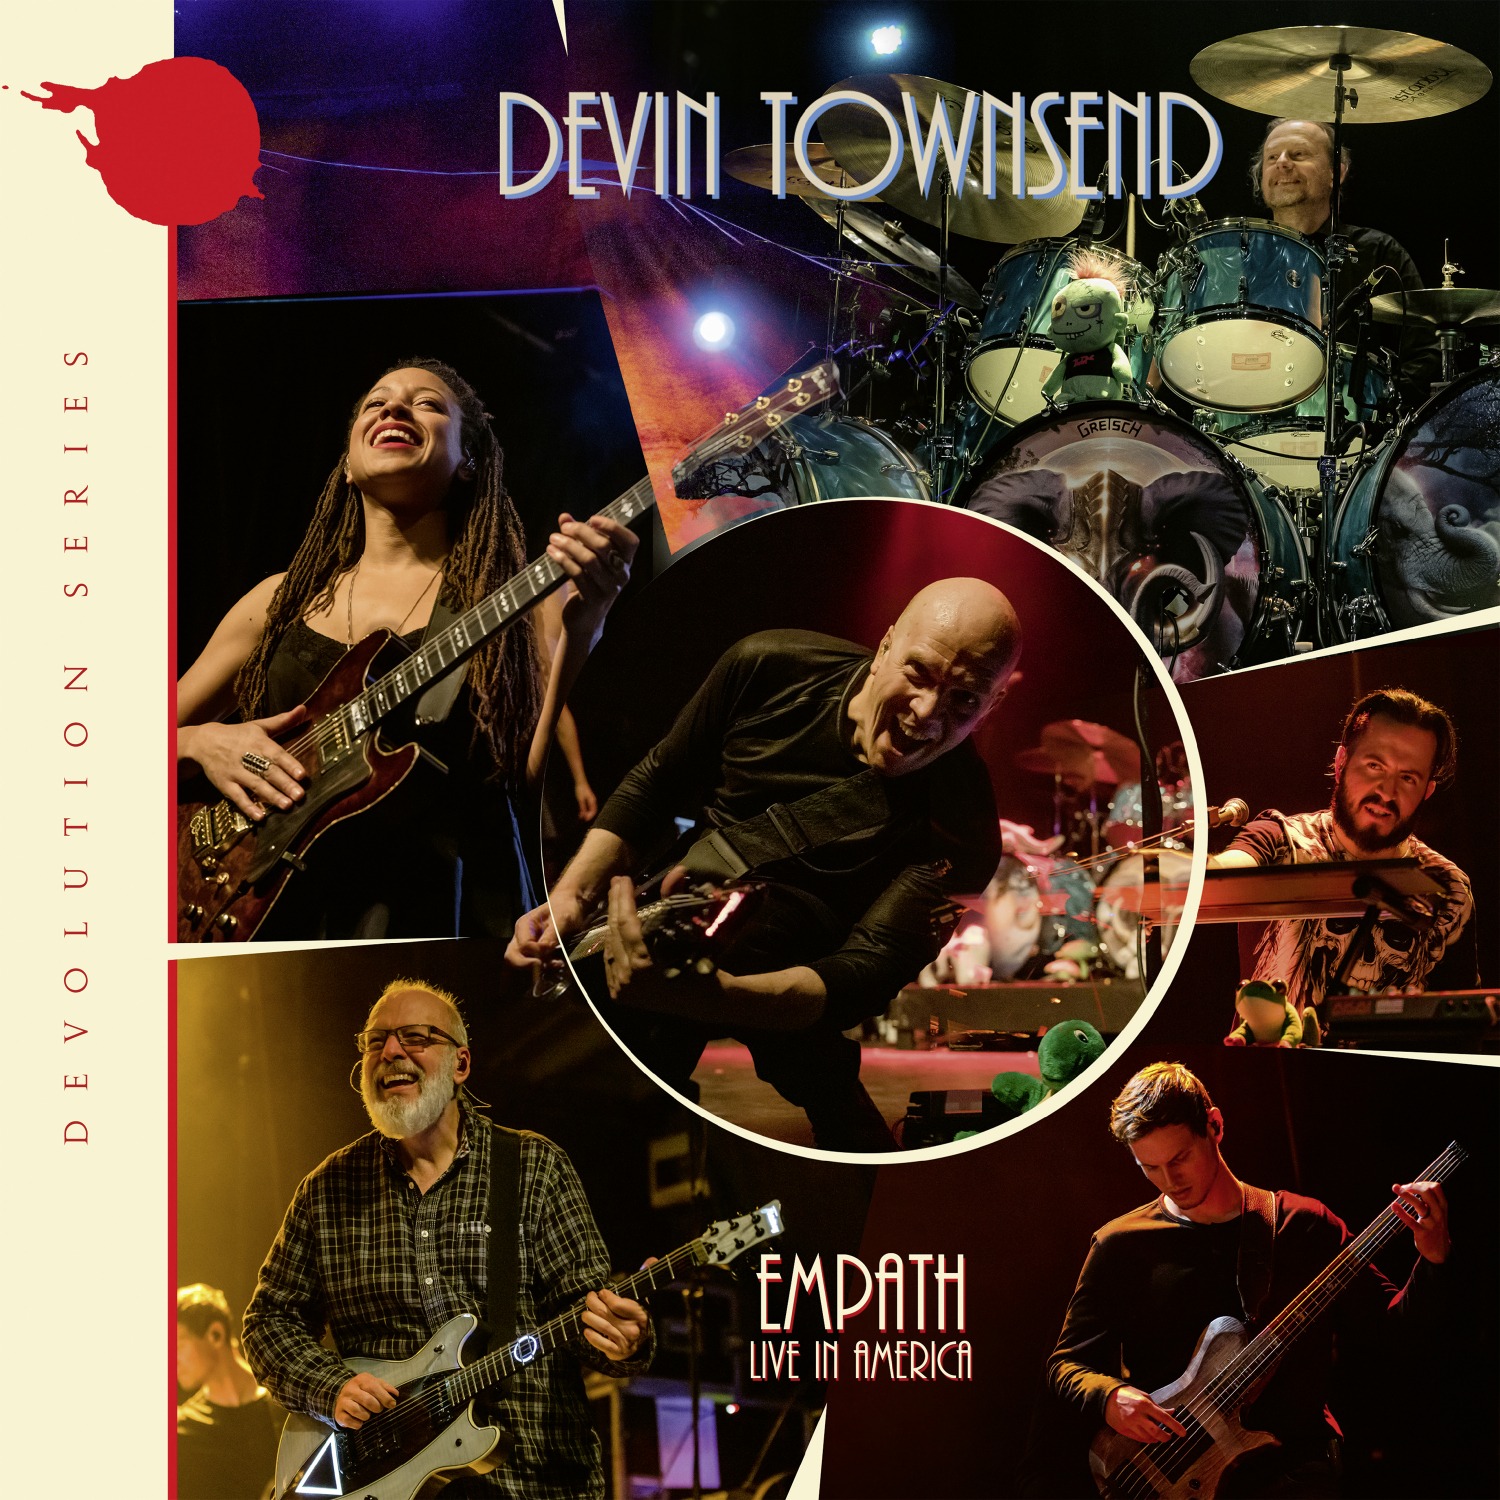 Devin Townsend – Devolution series #3 – Empath Live in America